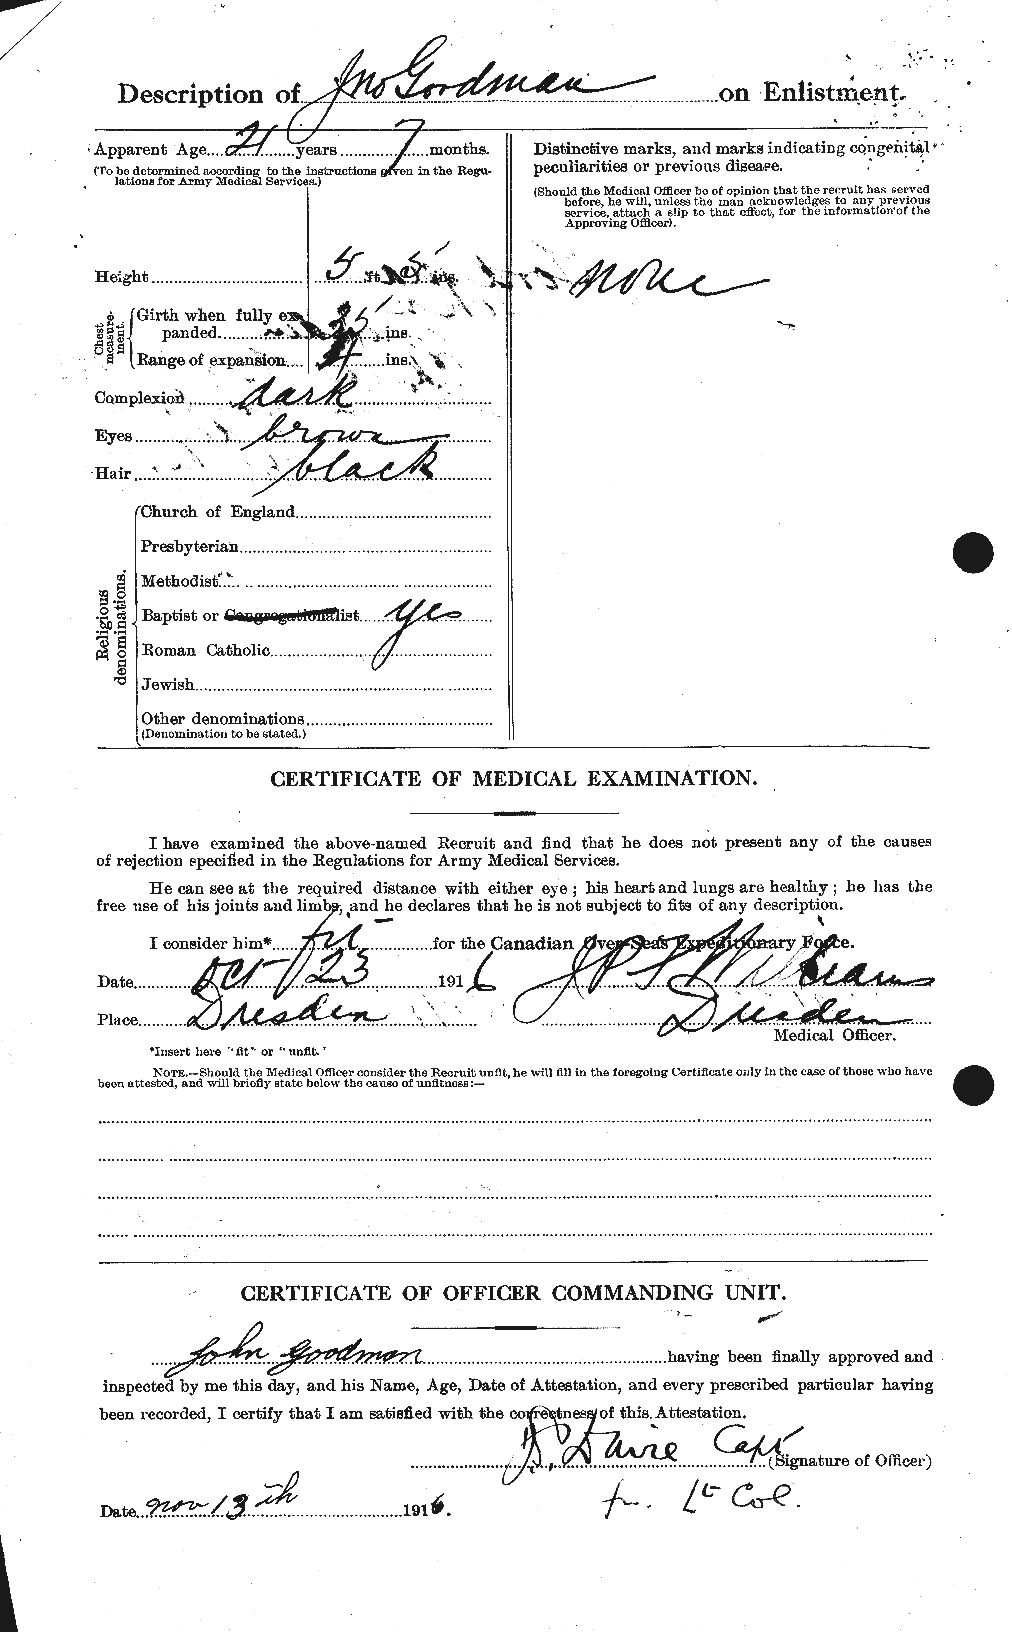 Dossiers du Personnel de la Première Guerre mondiale - CEC 356175b